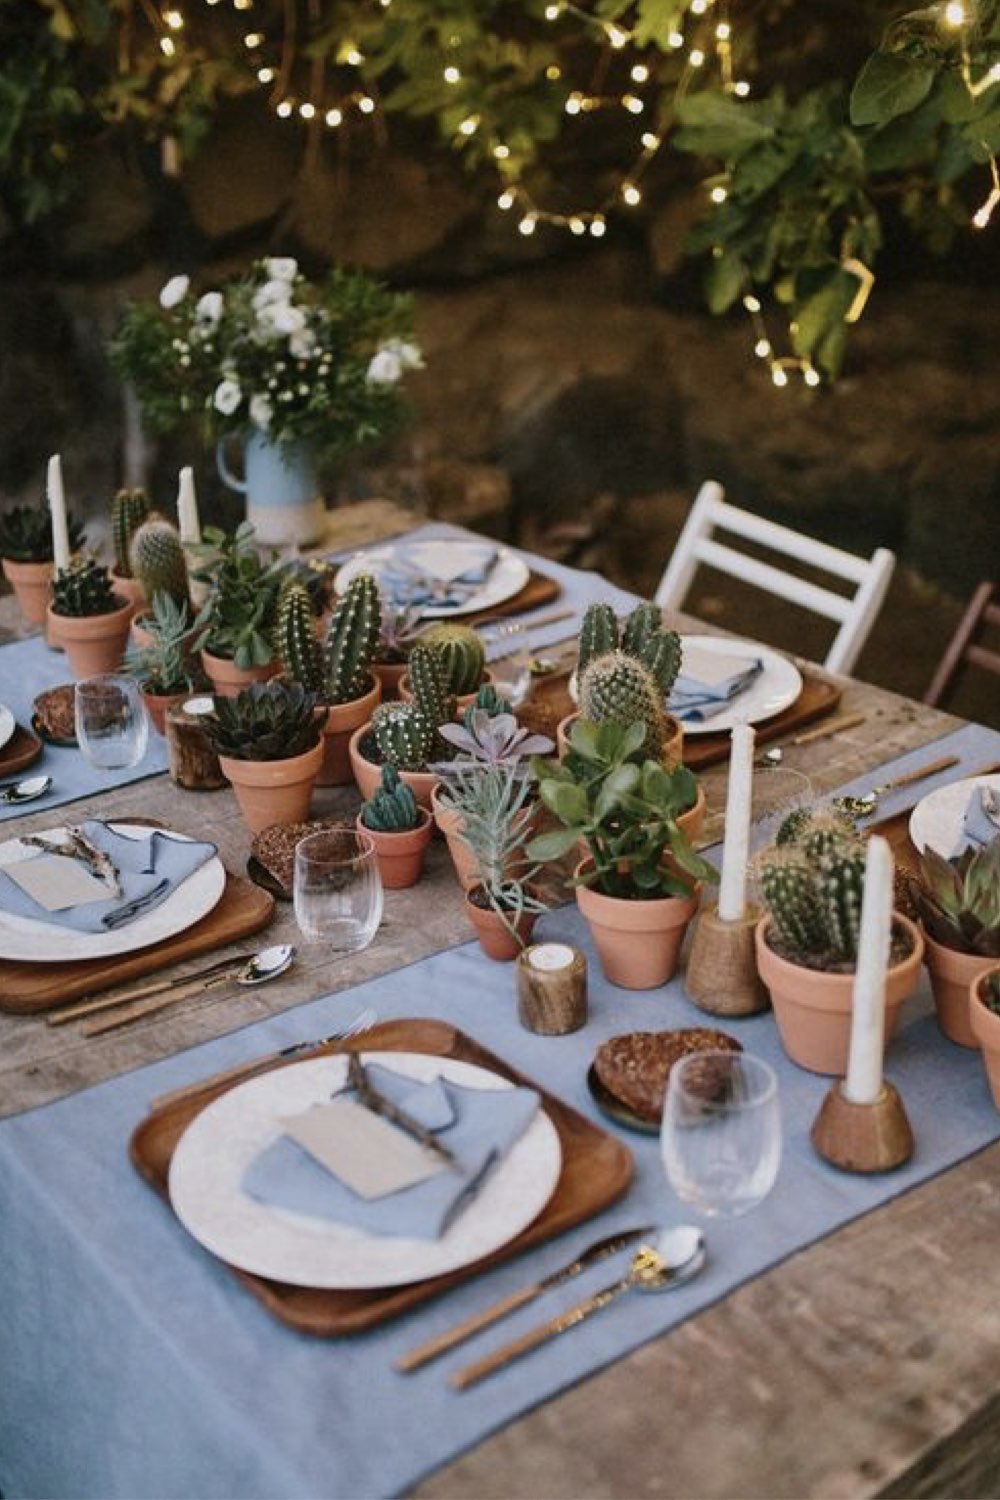 decoration mariage simple minimal chic rustique nature pot en terre cuite cactus chemin de table